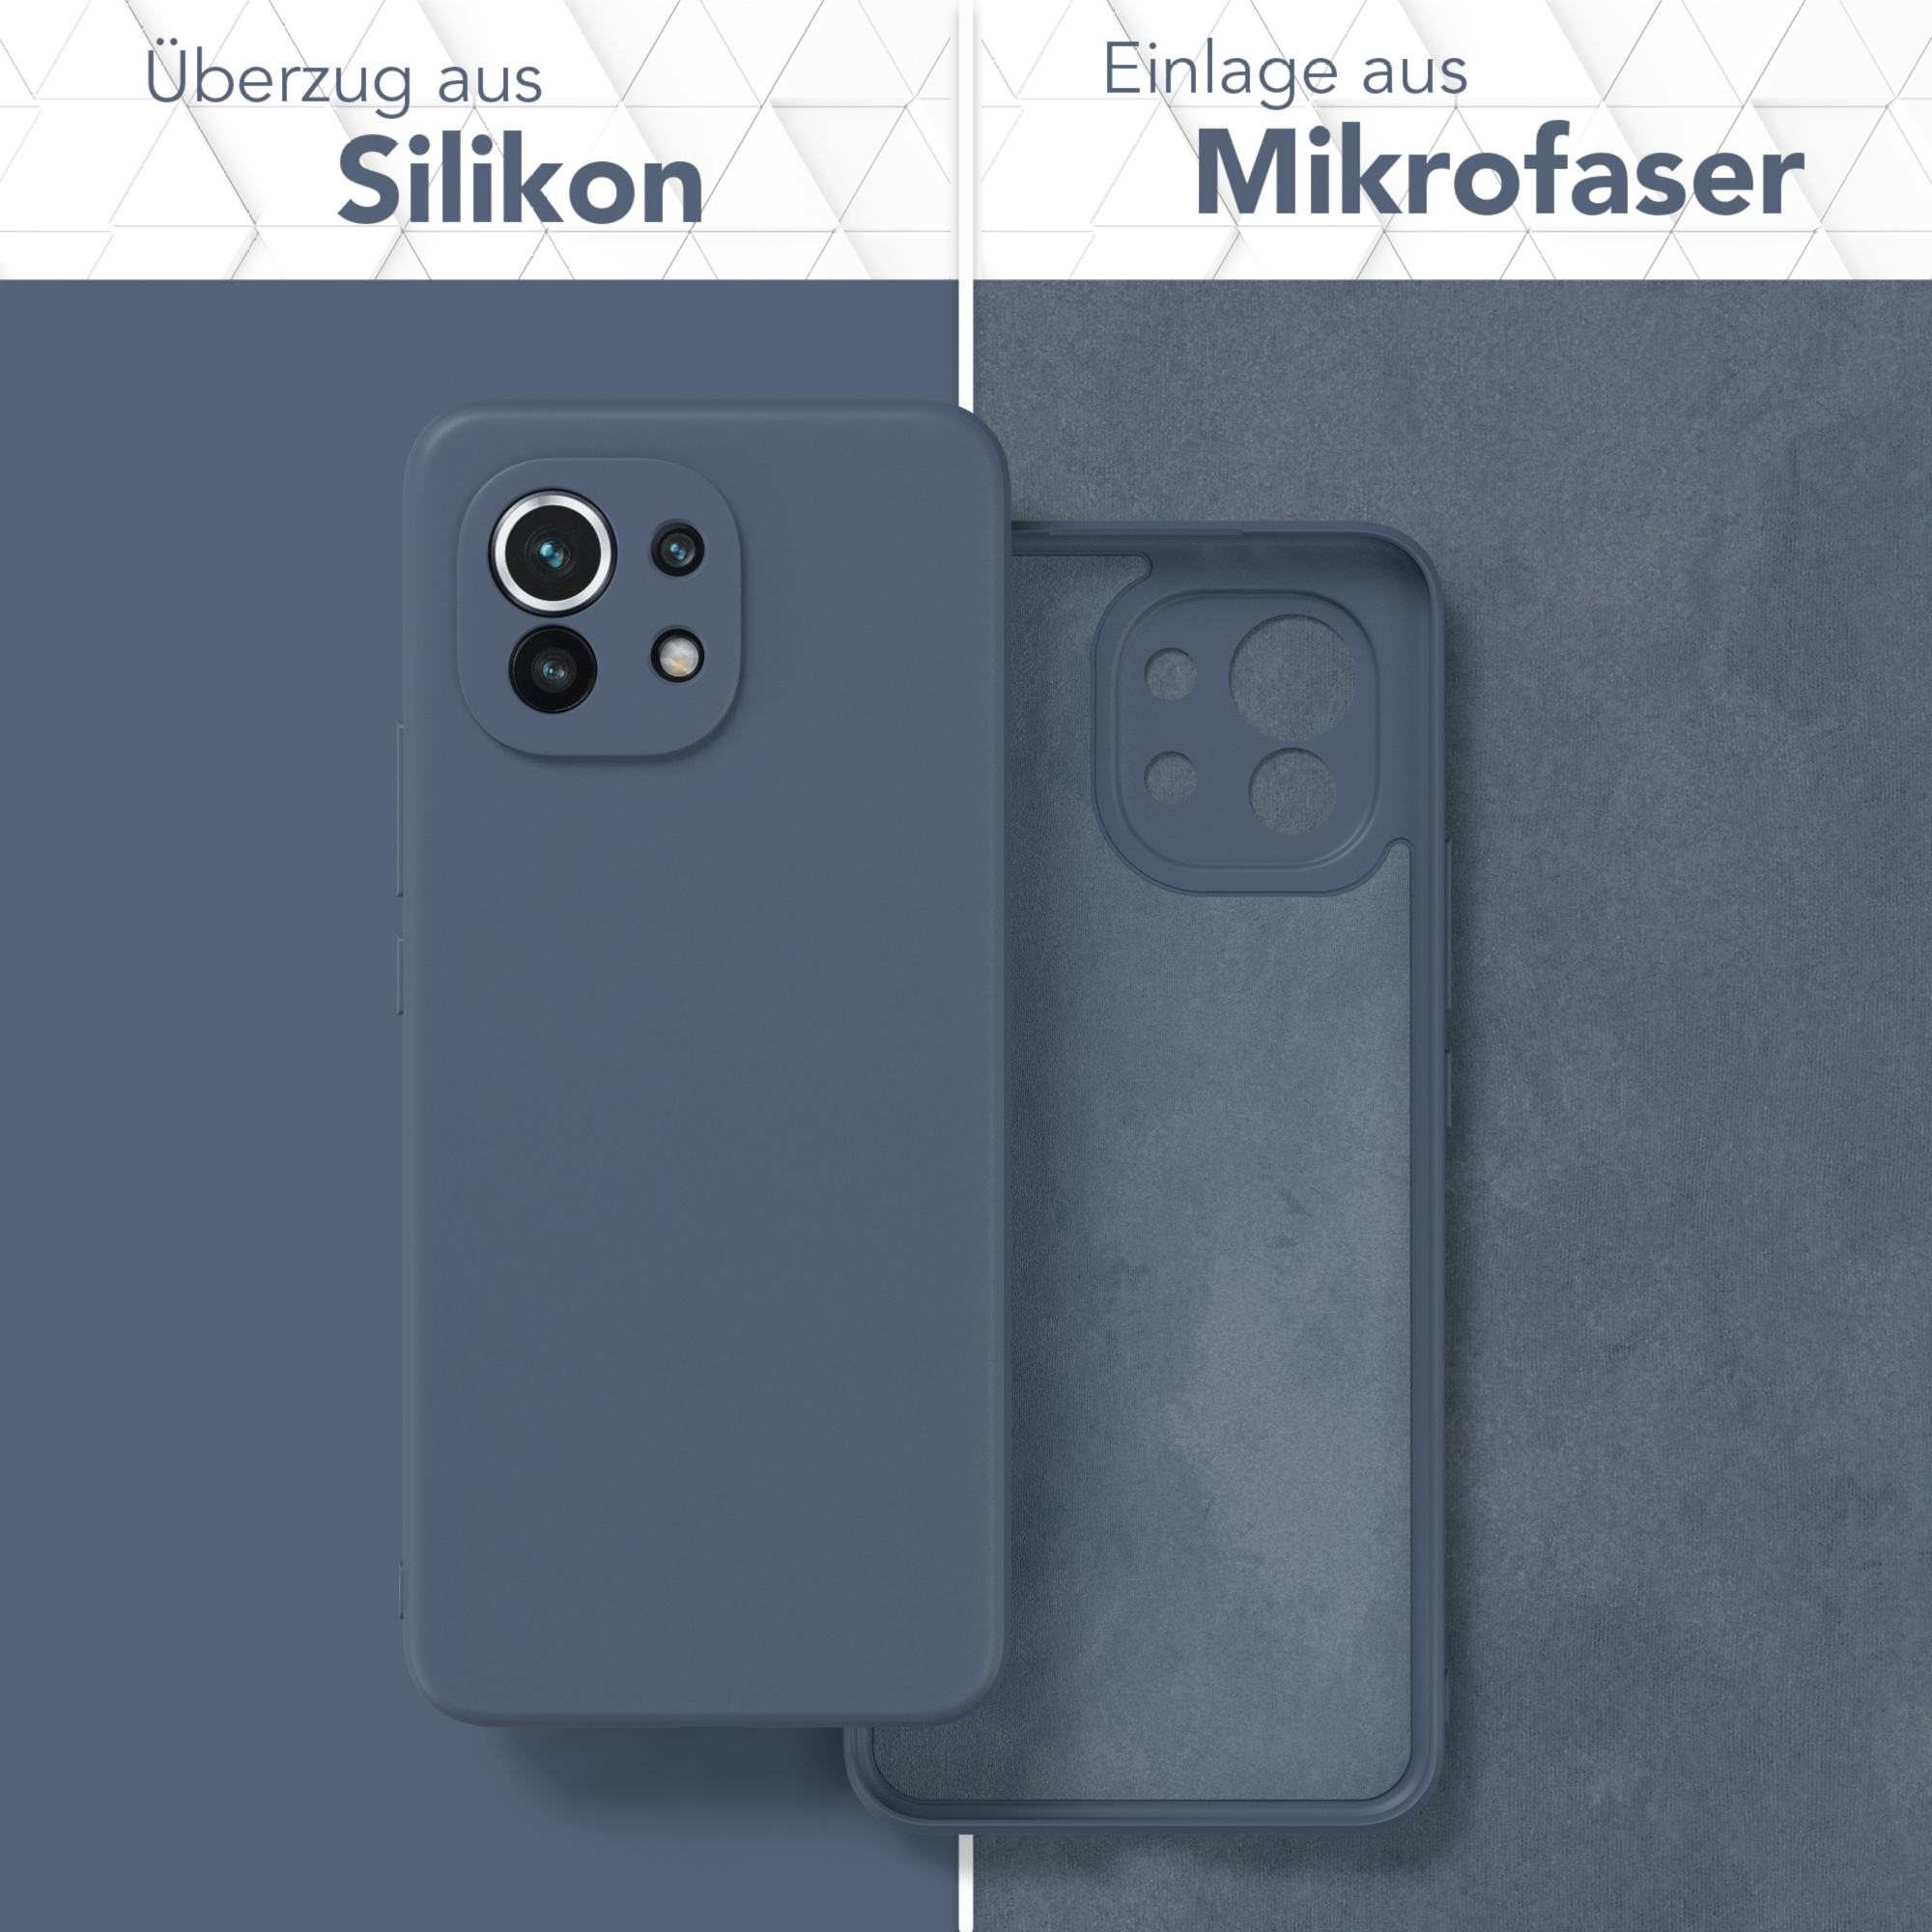 Silikon Petrol Xiaomi, Blau 11 Backcover, CASE Mi Matt, EAZY 5G, / Handycase TPU